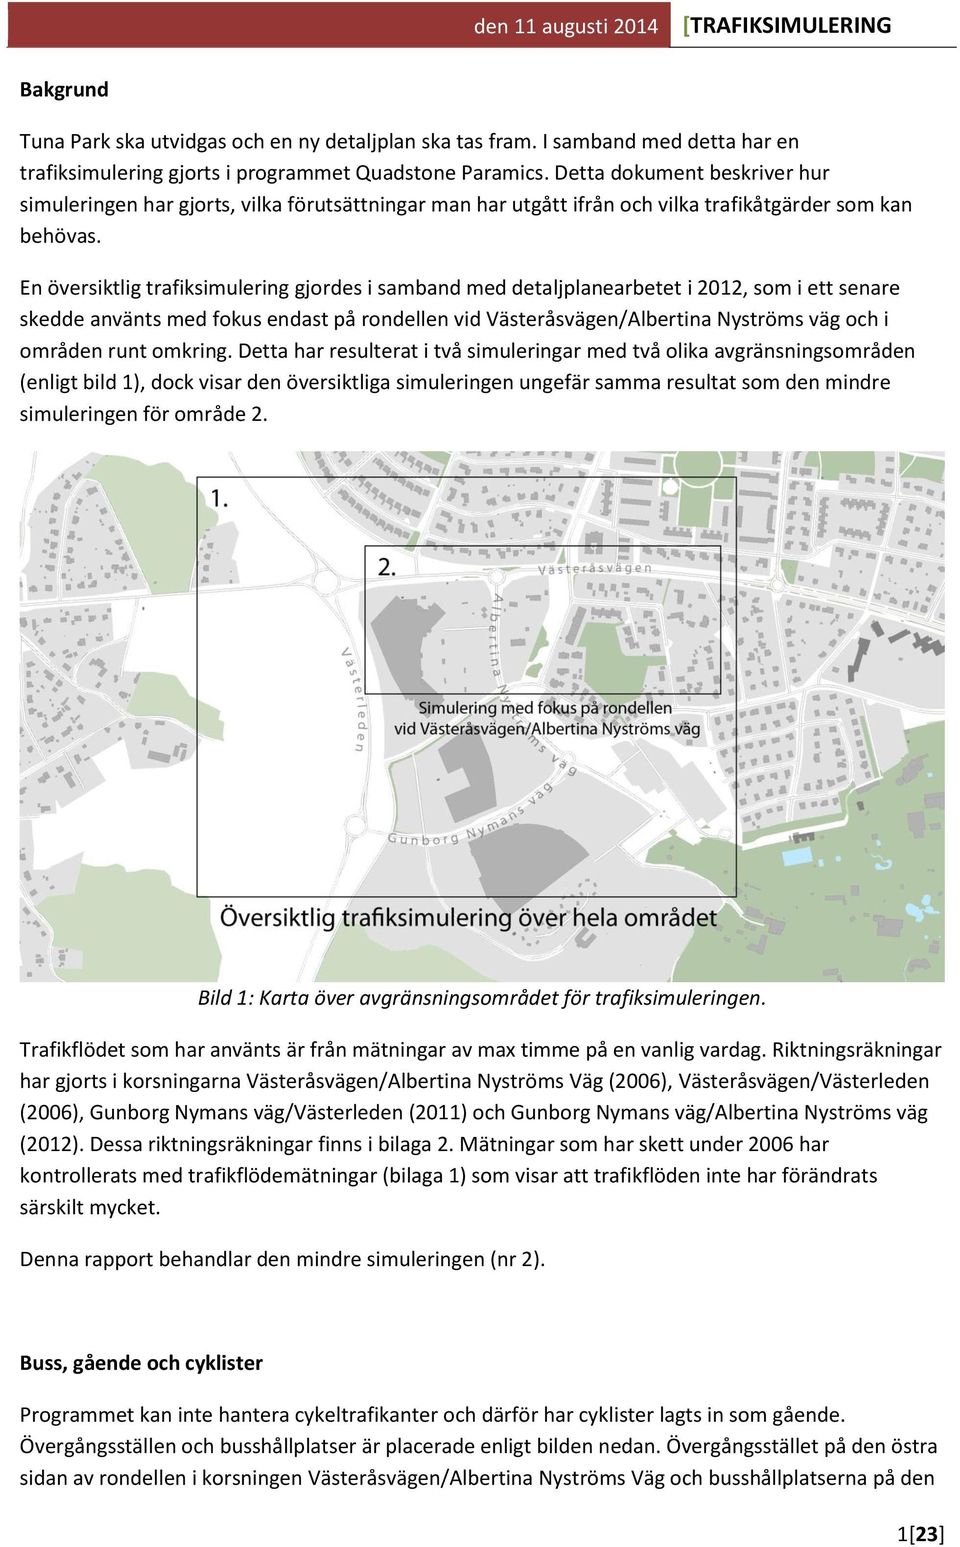 En översiktlig trafiksimulering gjordes i samband med detaljplanearbetet i 2012, som i ett senare skedde använts med fokus endast på rondellen vid Västeråsvägen/Albertina Nyströms väg och i områden